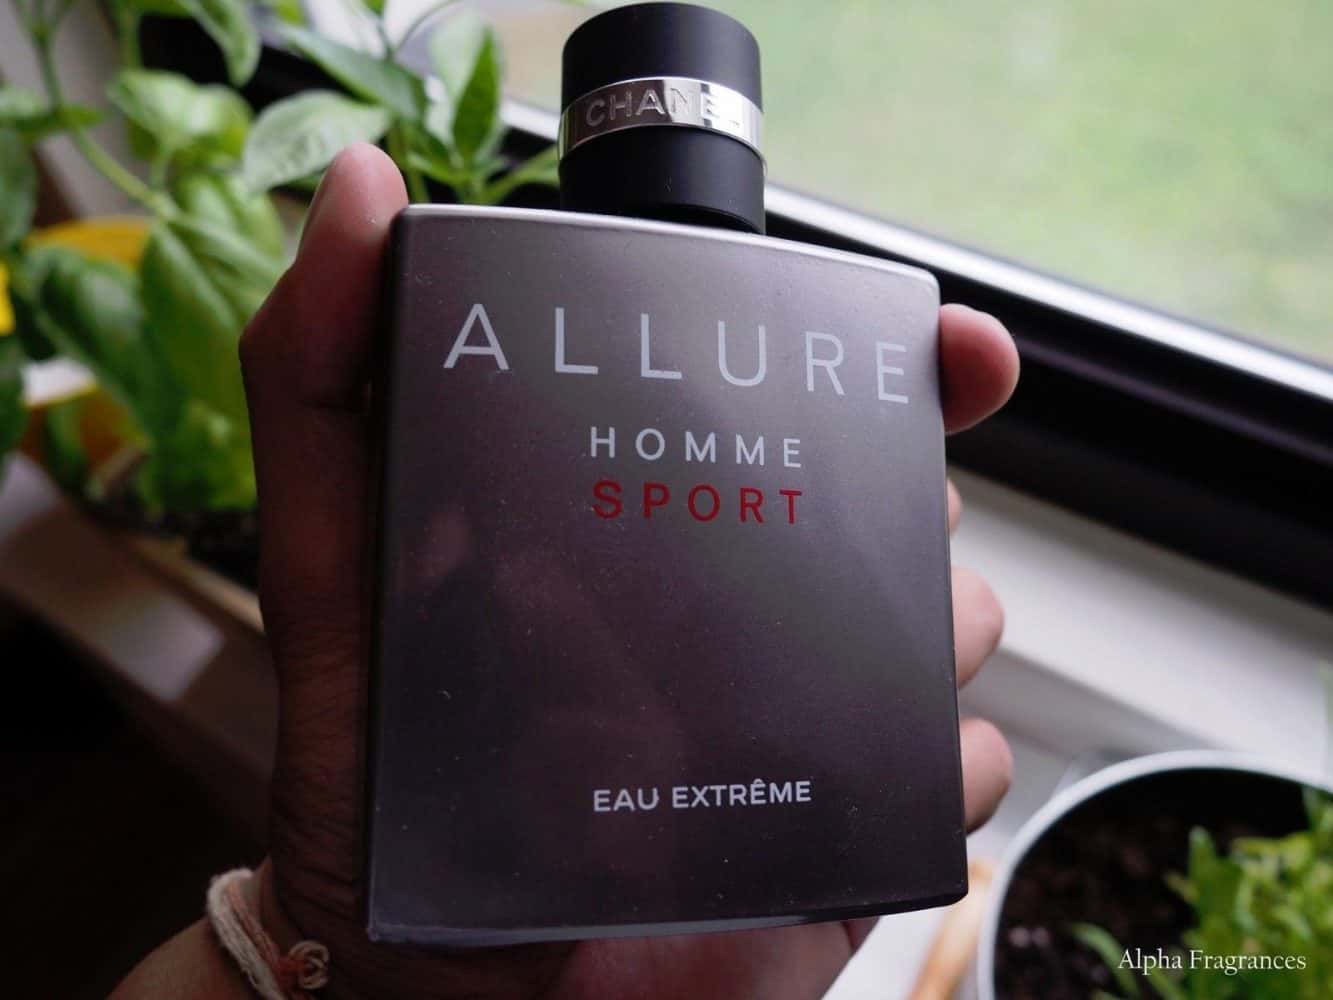 Chanel Allure Homme Sport Eau Extrême  Fragrance Review  Suparfum